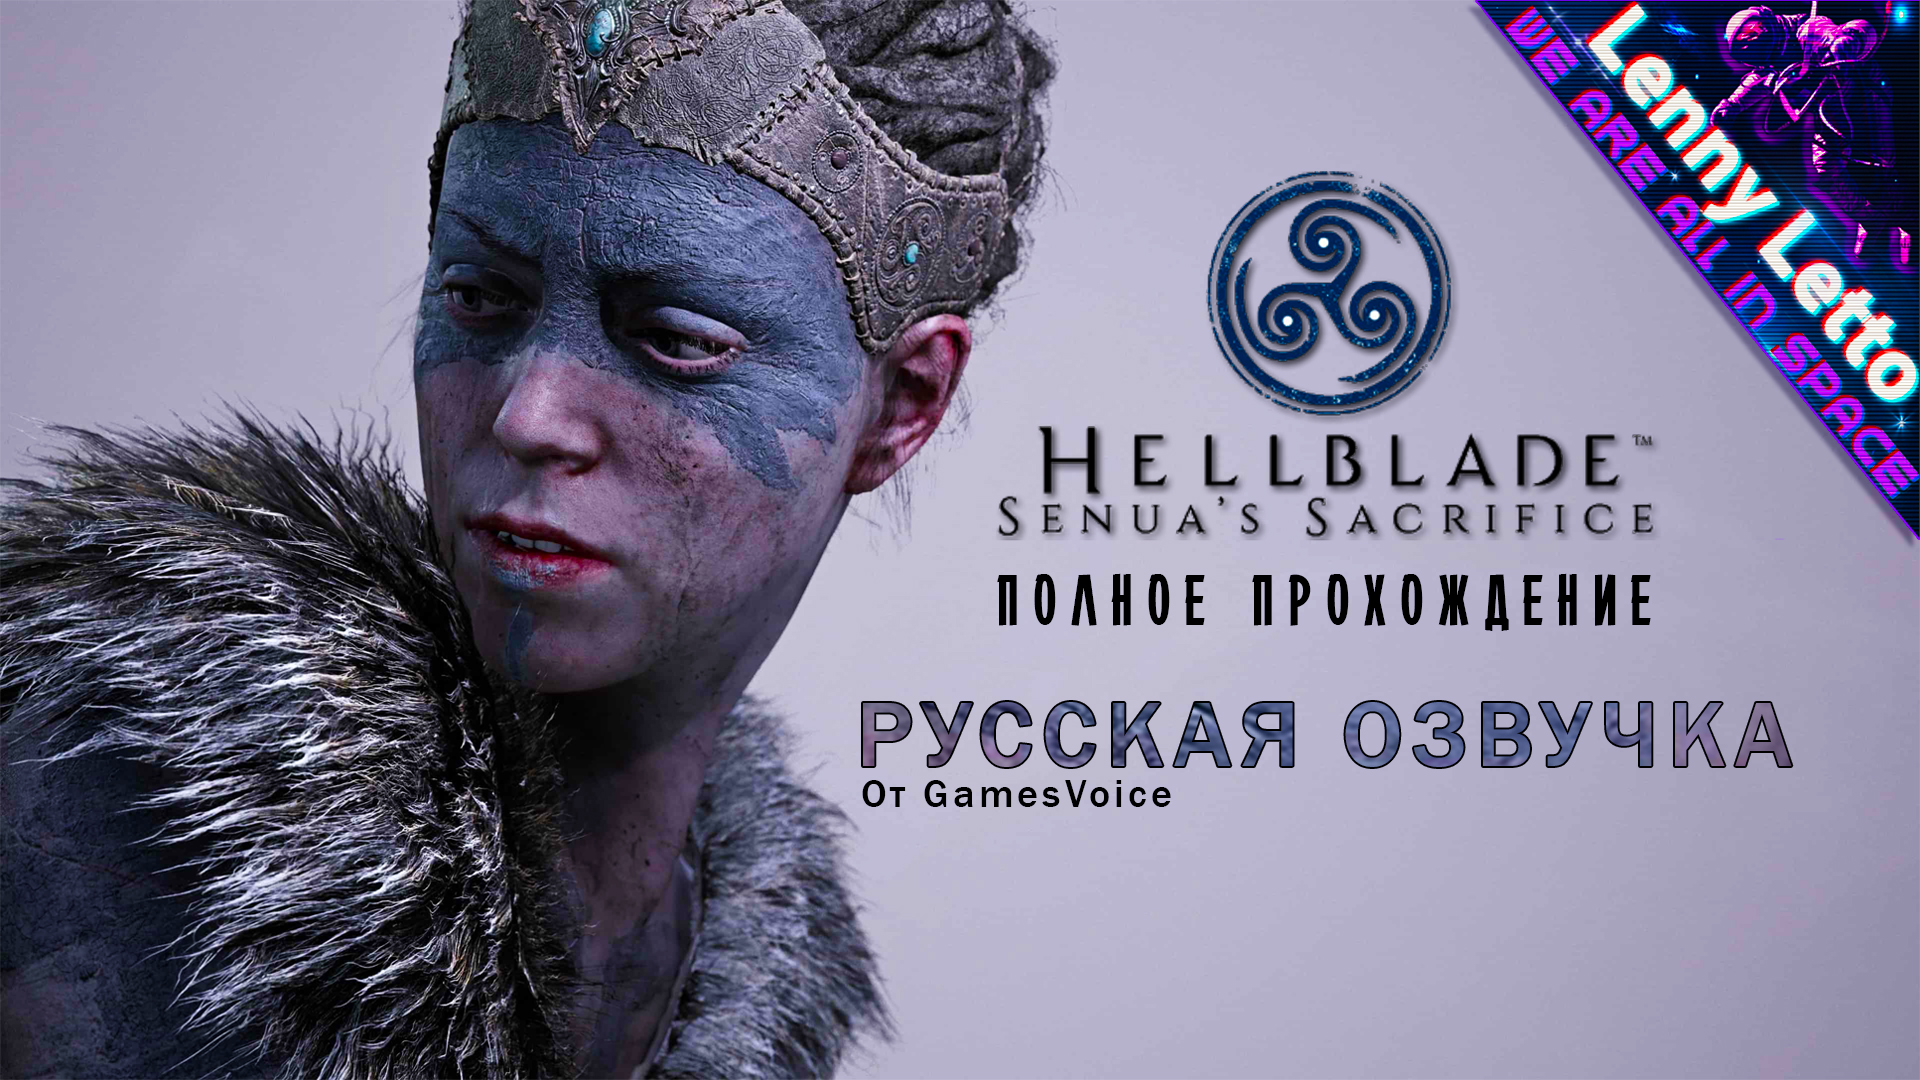 Полное прохождение Hellblade: Senua’s Sacrifice с русской озвучкой. Часть 1